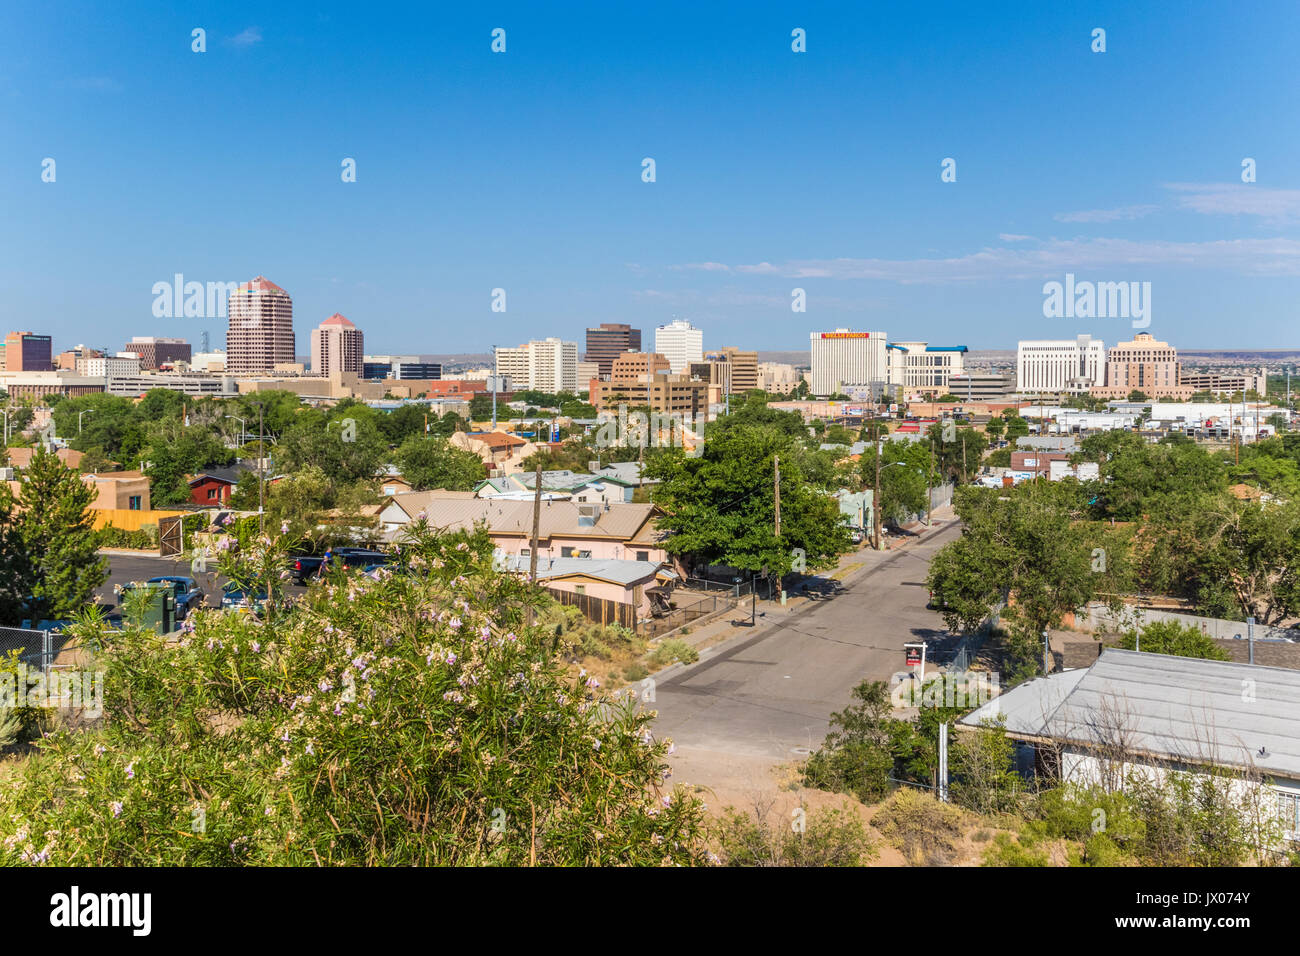 Downtown Albuquerque skyline in Albuquerque, New Mexico. Stock Photo